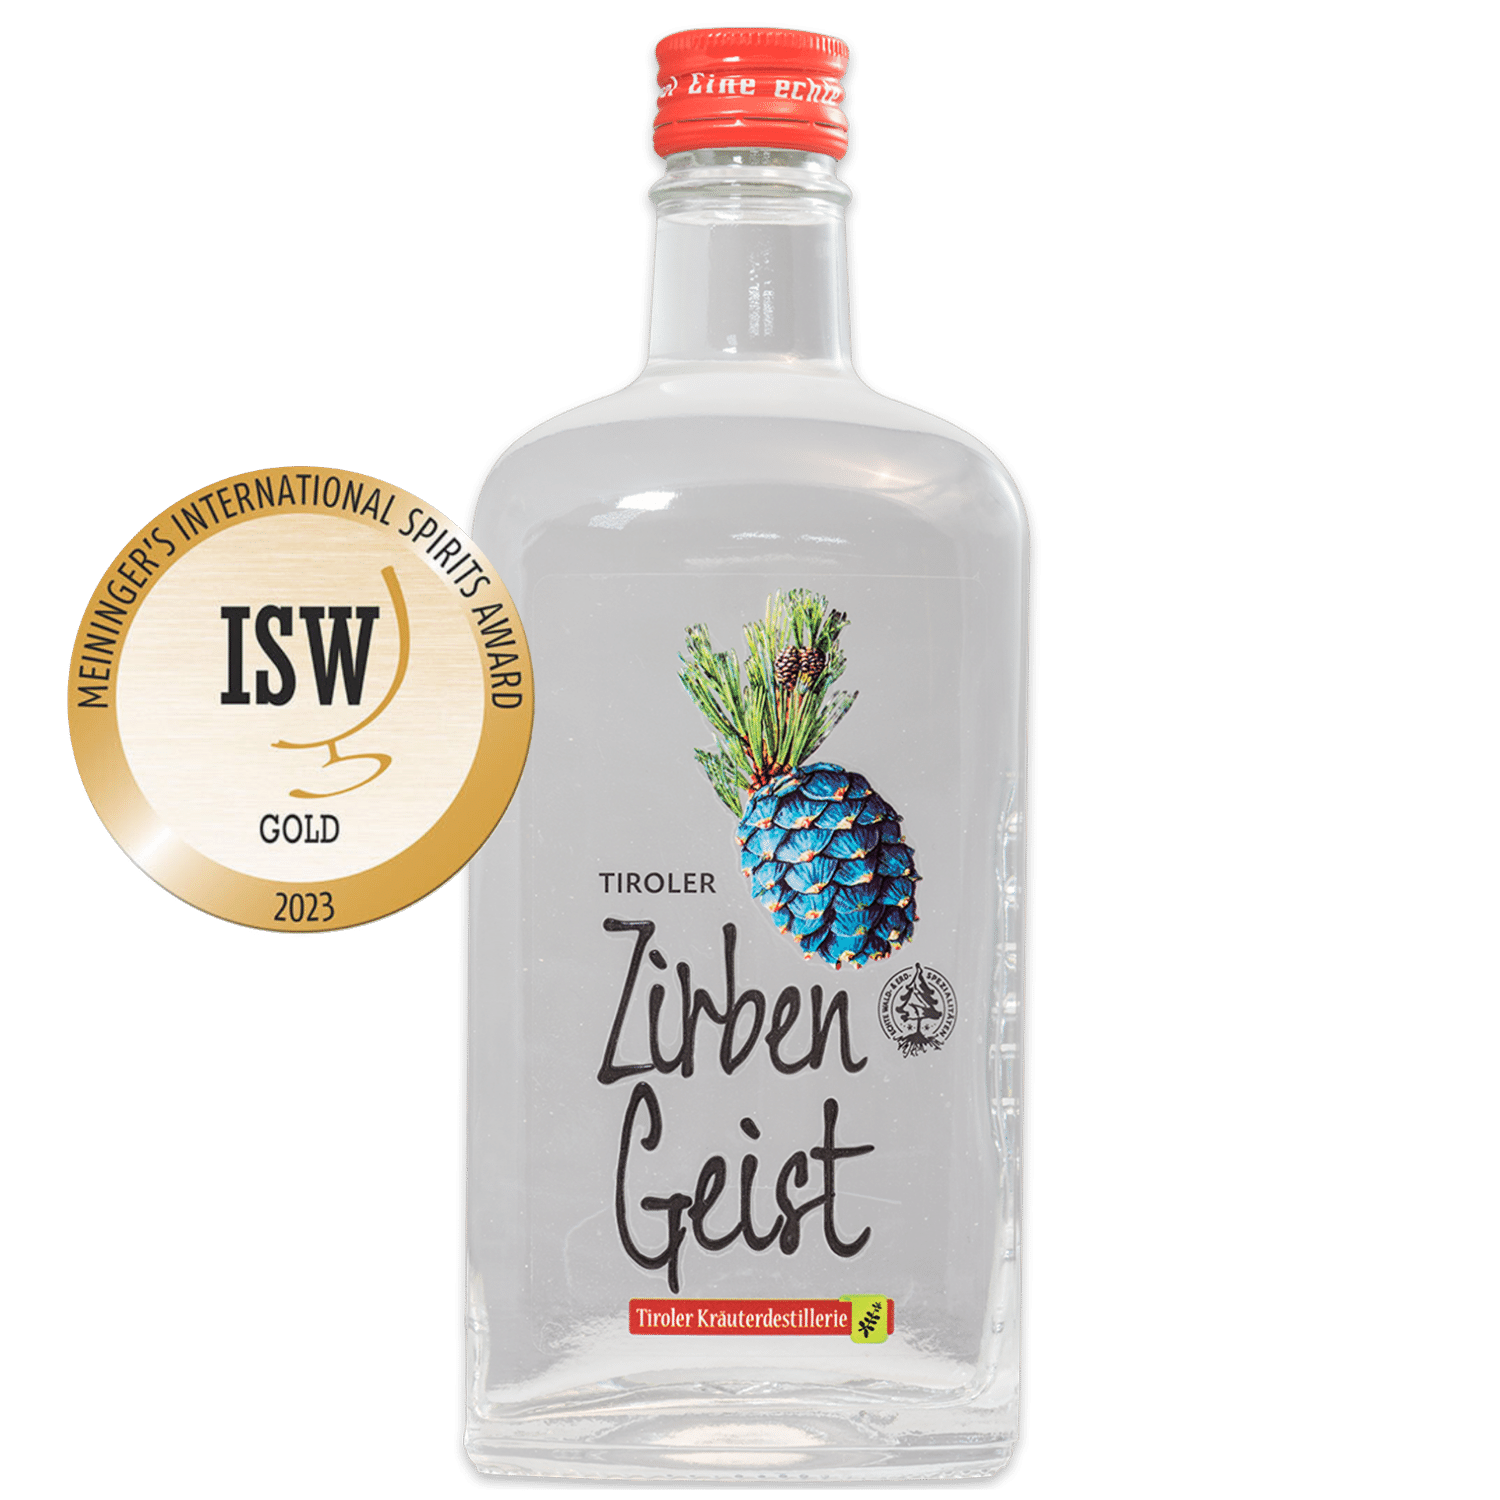 Gold awarded Swiss Stone Pine Spirit from the Tiroler Kräuterdestillerie in a noble bottle